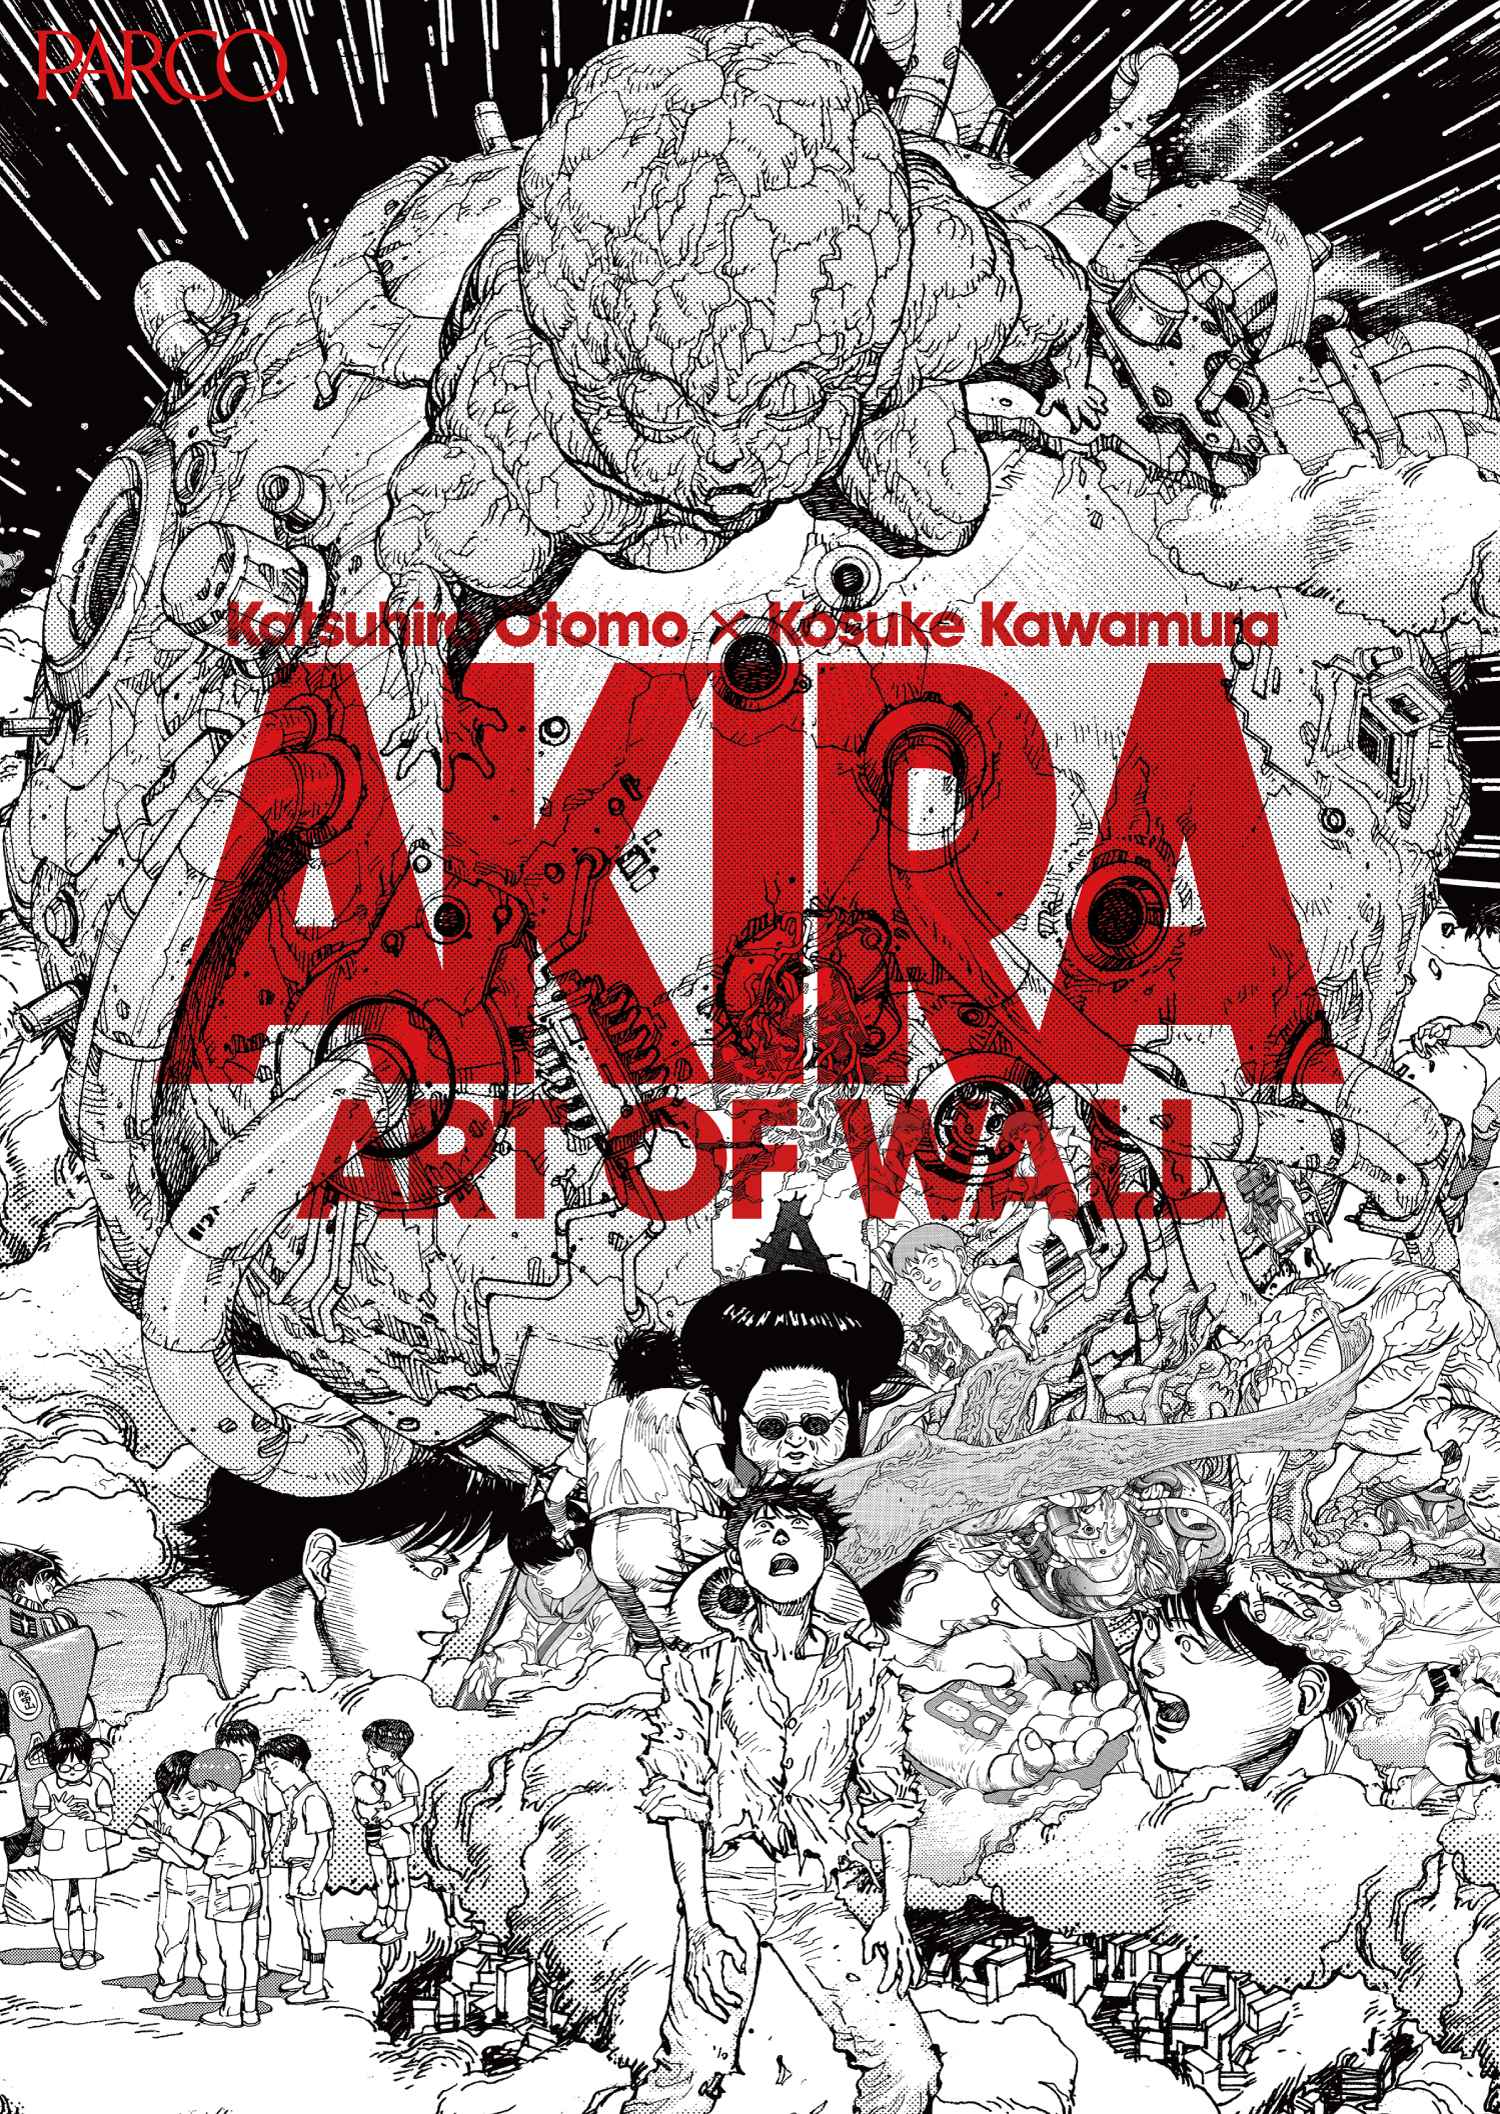 大友克洋氏×河村康輔氏の巨大コラージュ作品を展示 AKIRA ART OF WALL